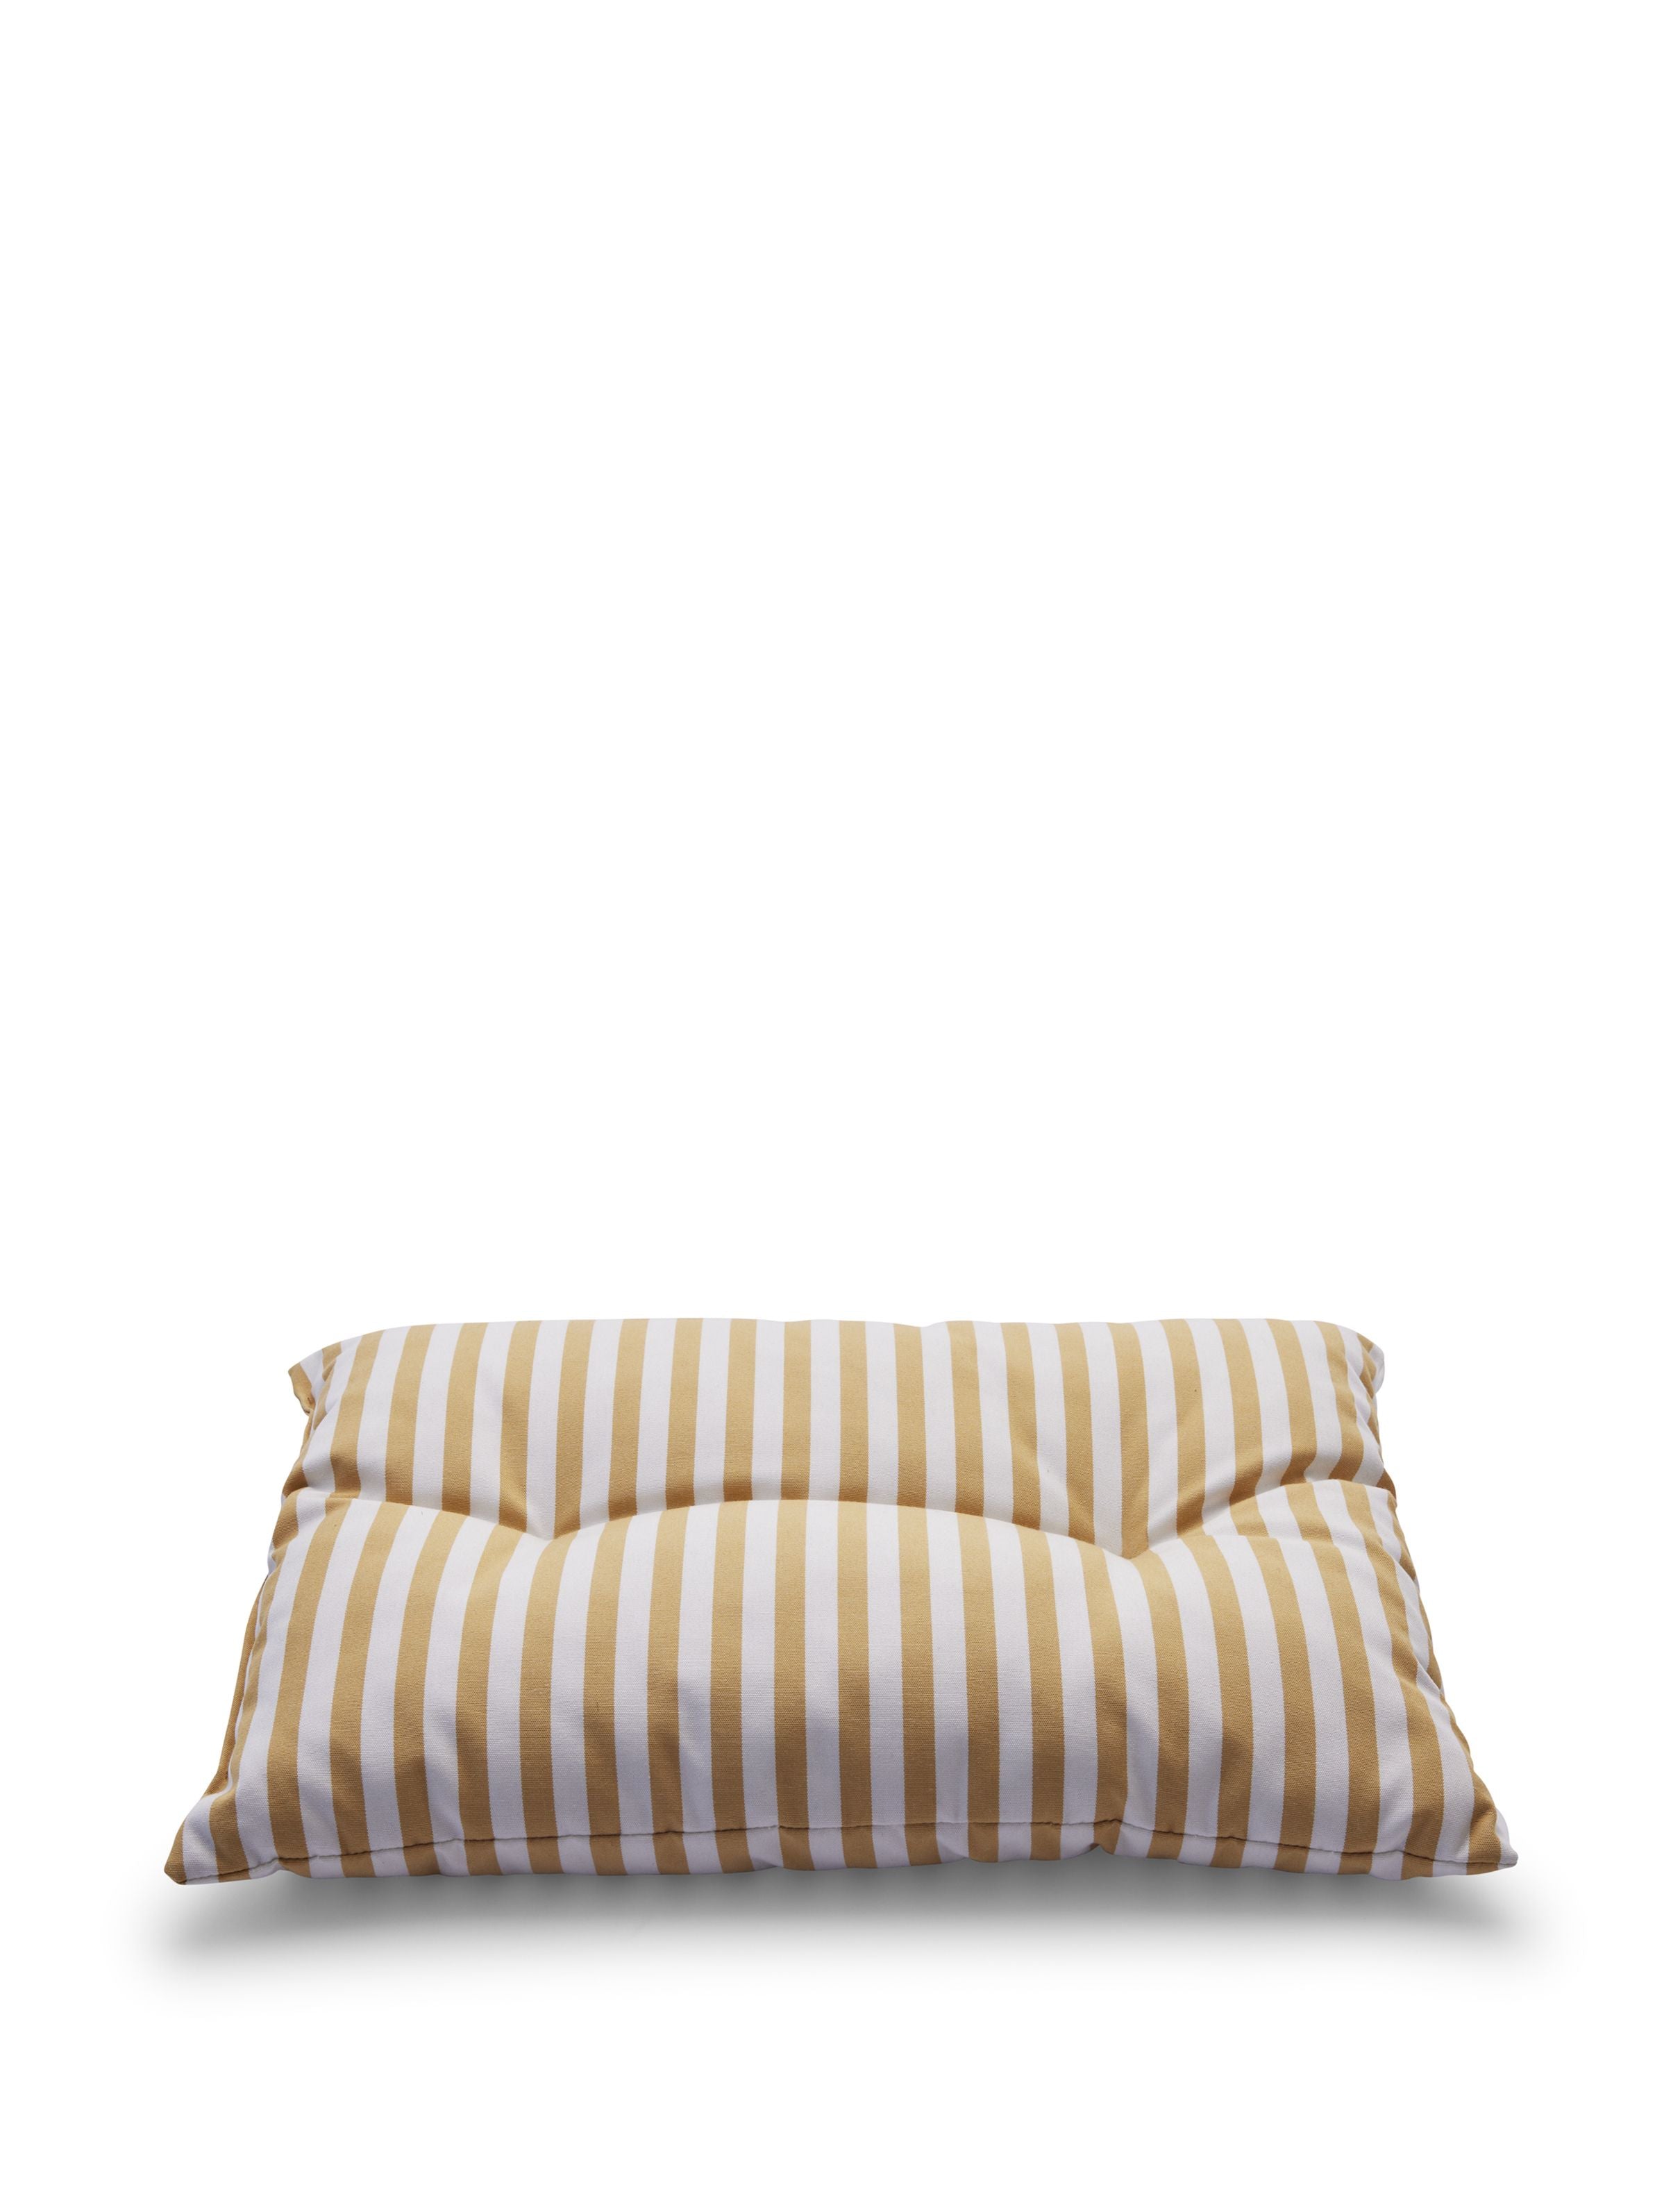 Skagerak Barriere Cushion 55x43 Cm, Golden Yellow Stripe